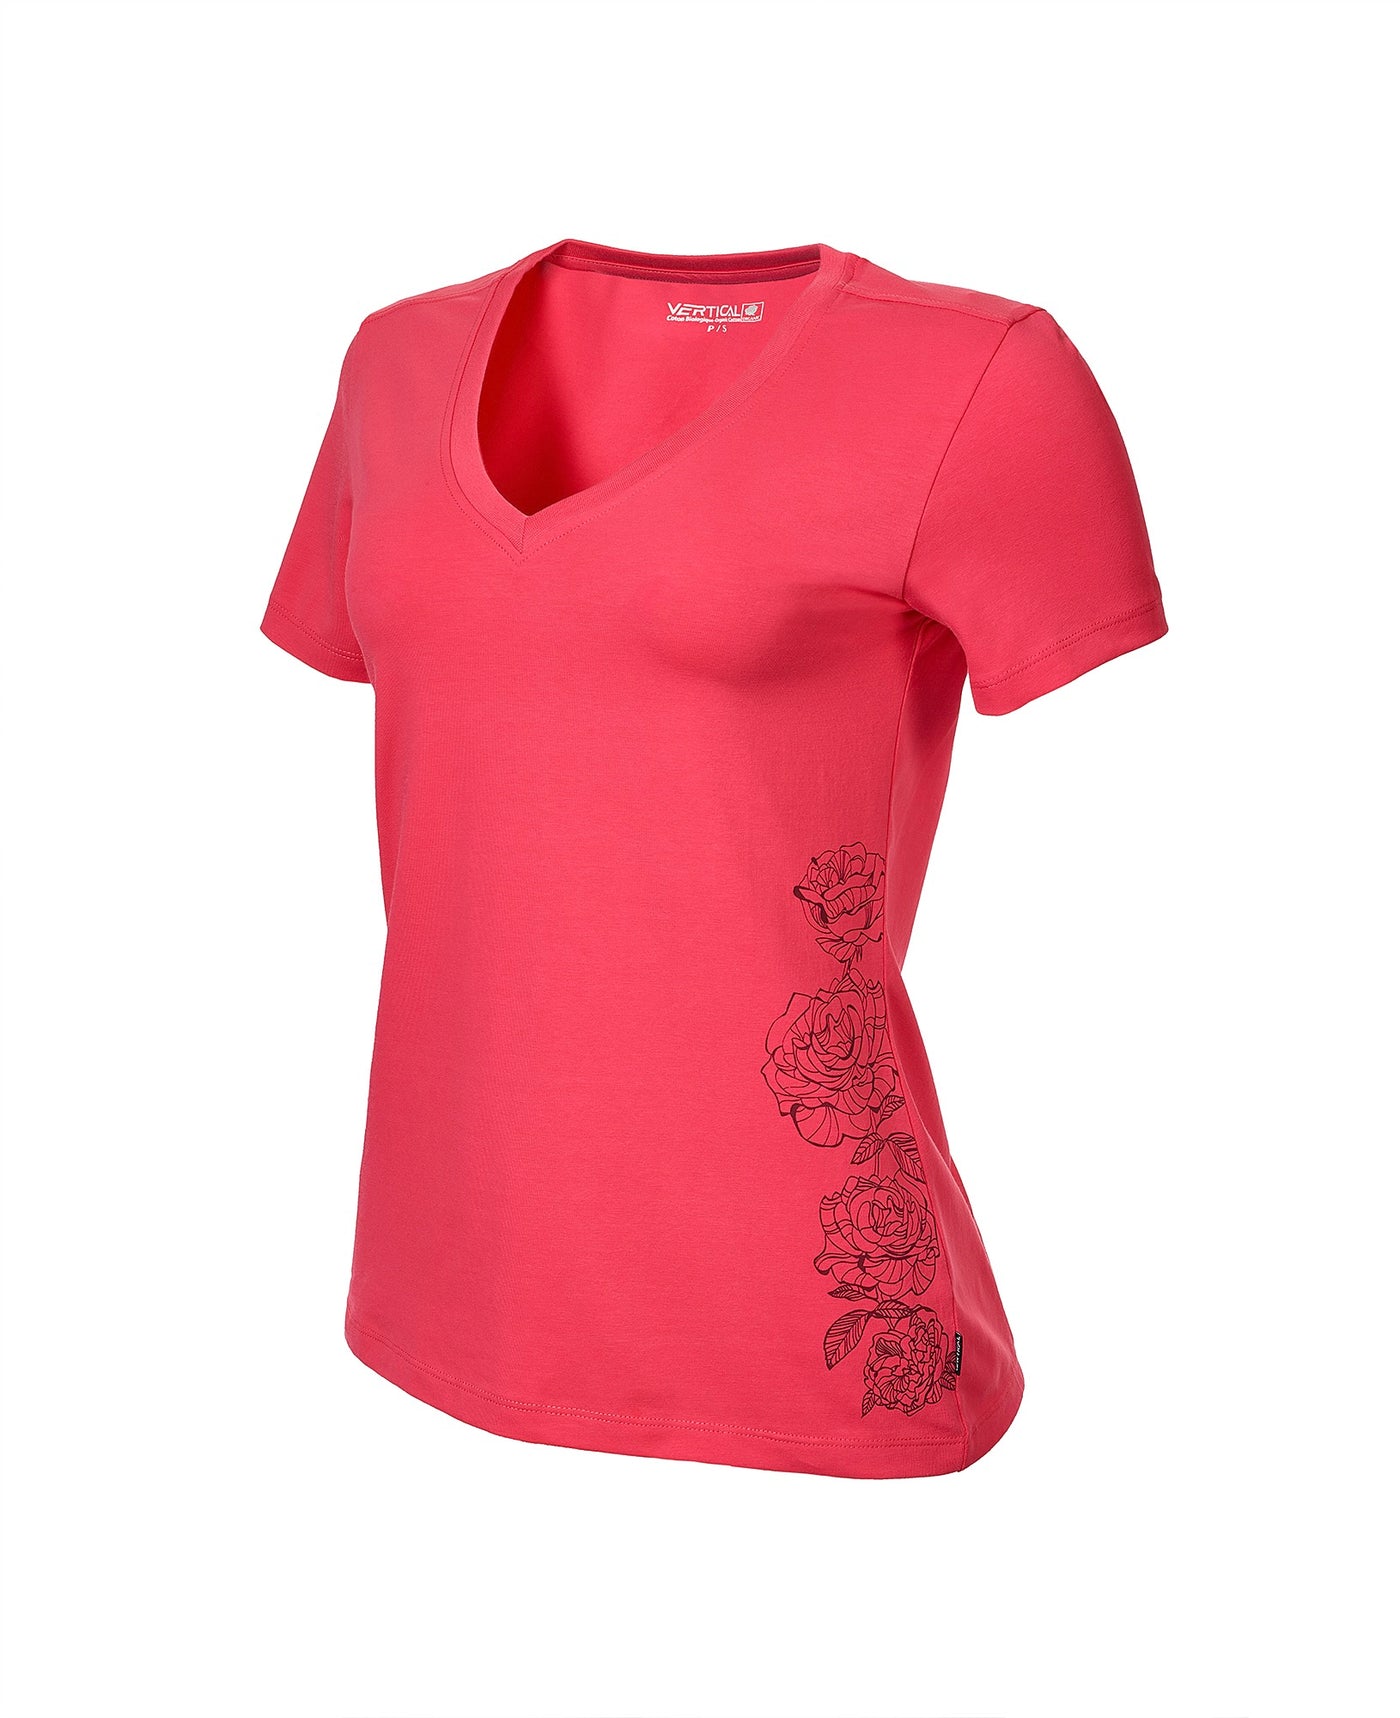 T-Shirt Fleurs - Femme - 60% de rabais